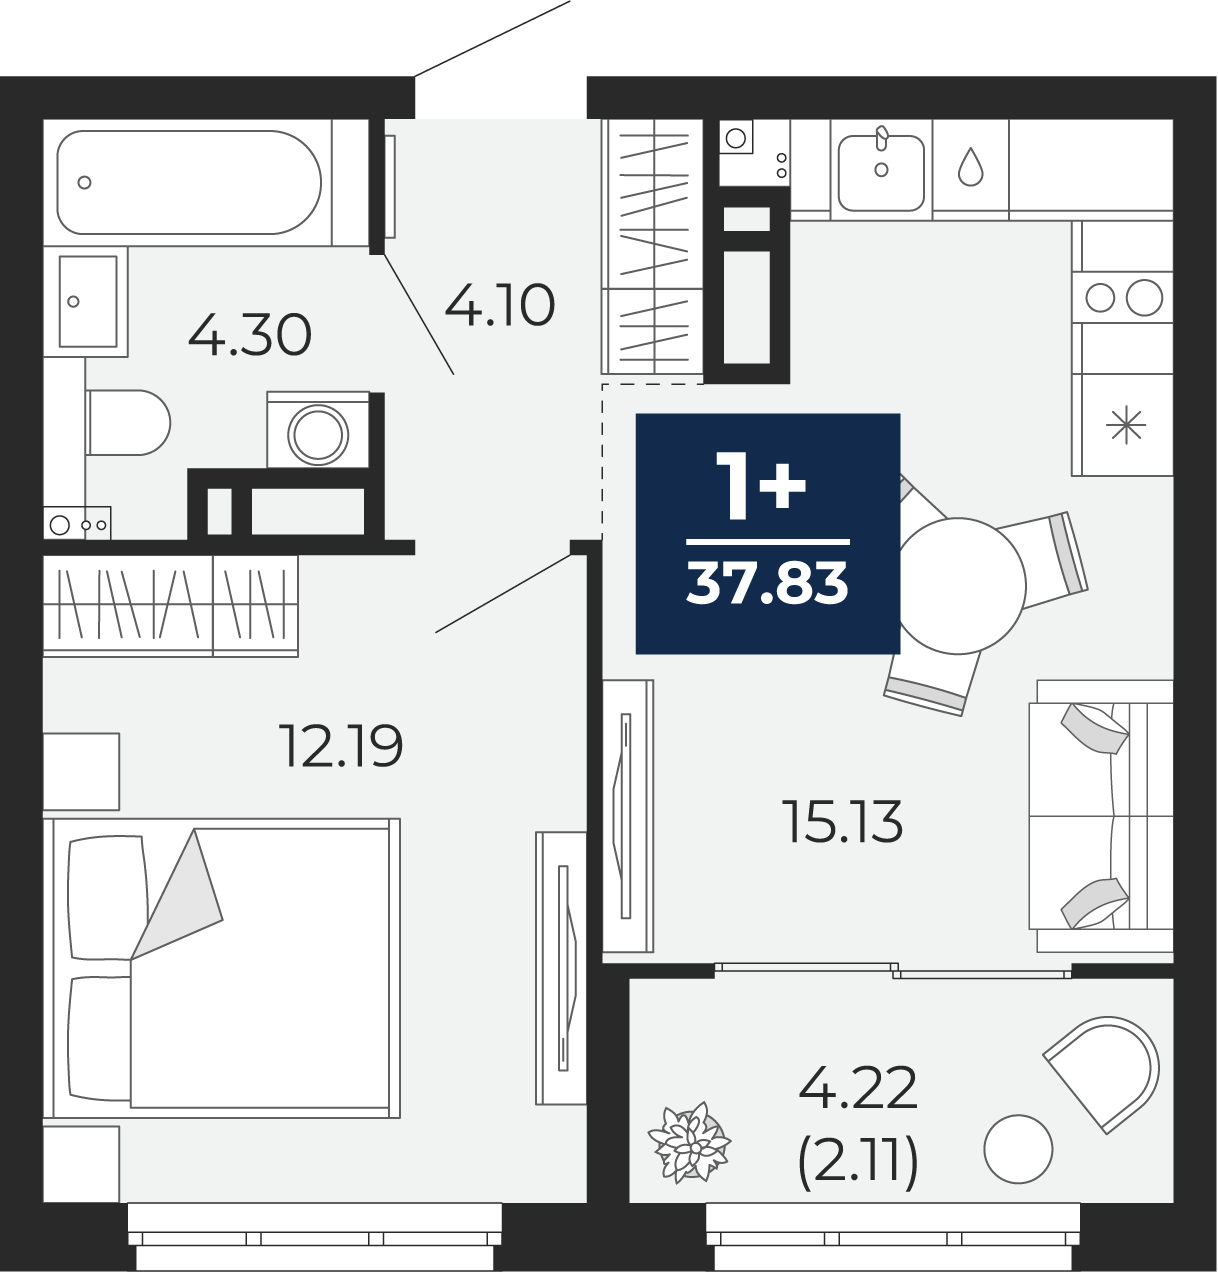 Квартира № 234, 1-комнатная, 37.83 кв. м, 5 этаж